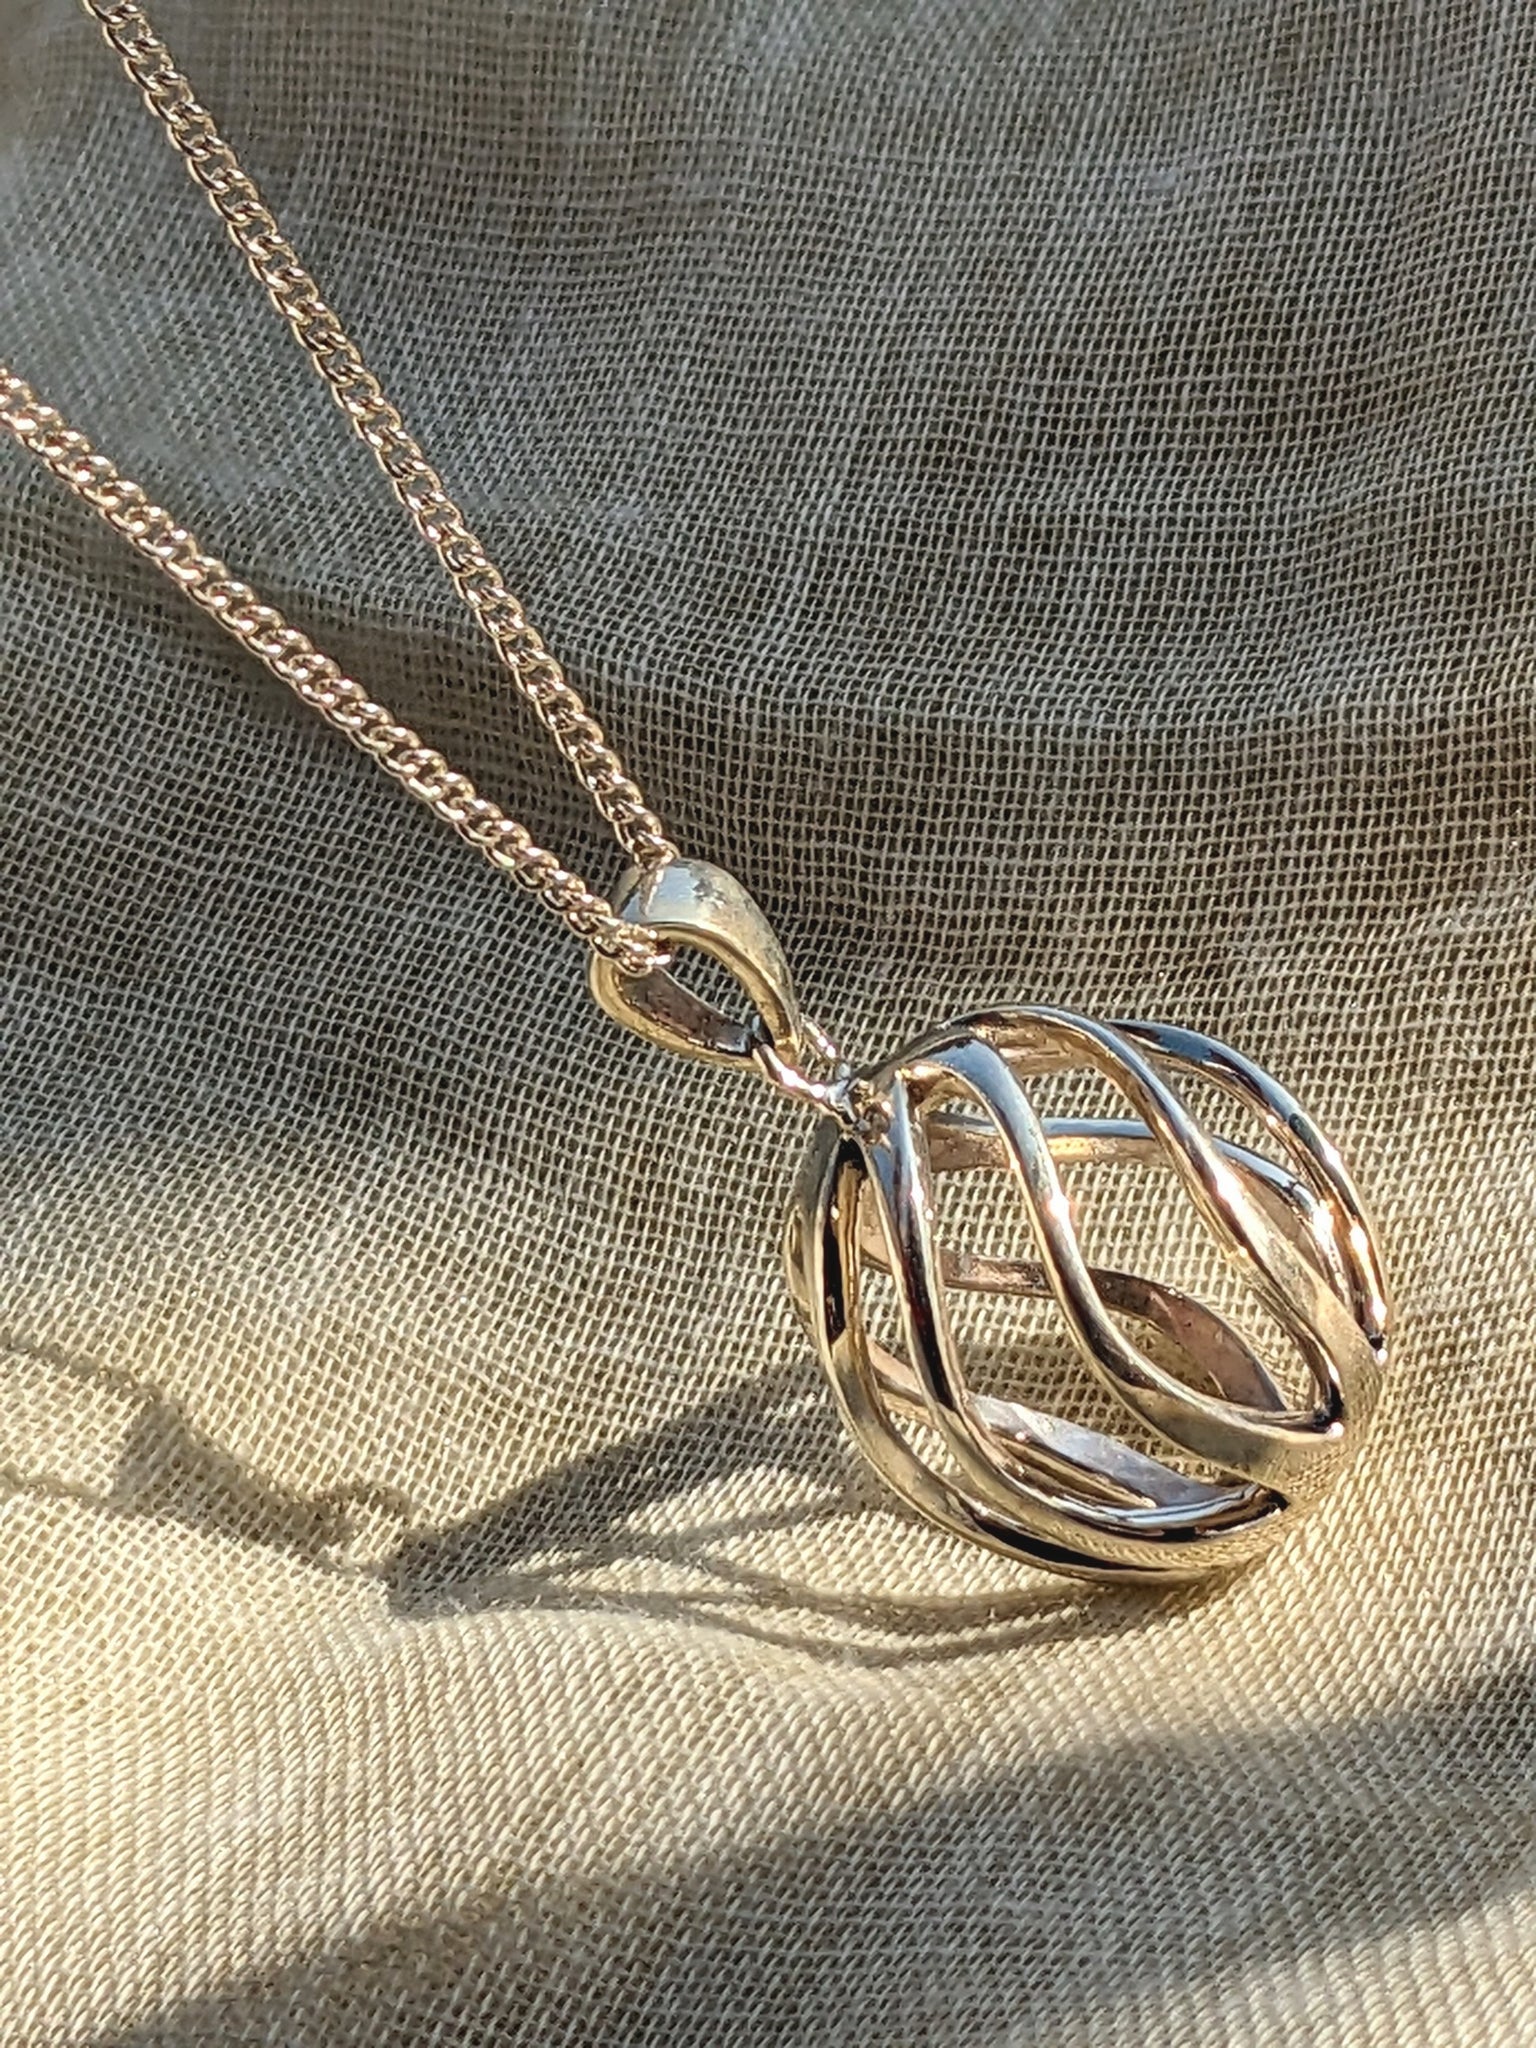 Ball Pendant - Silver - Pure silver pendant- Silver necklace